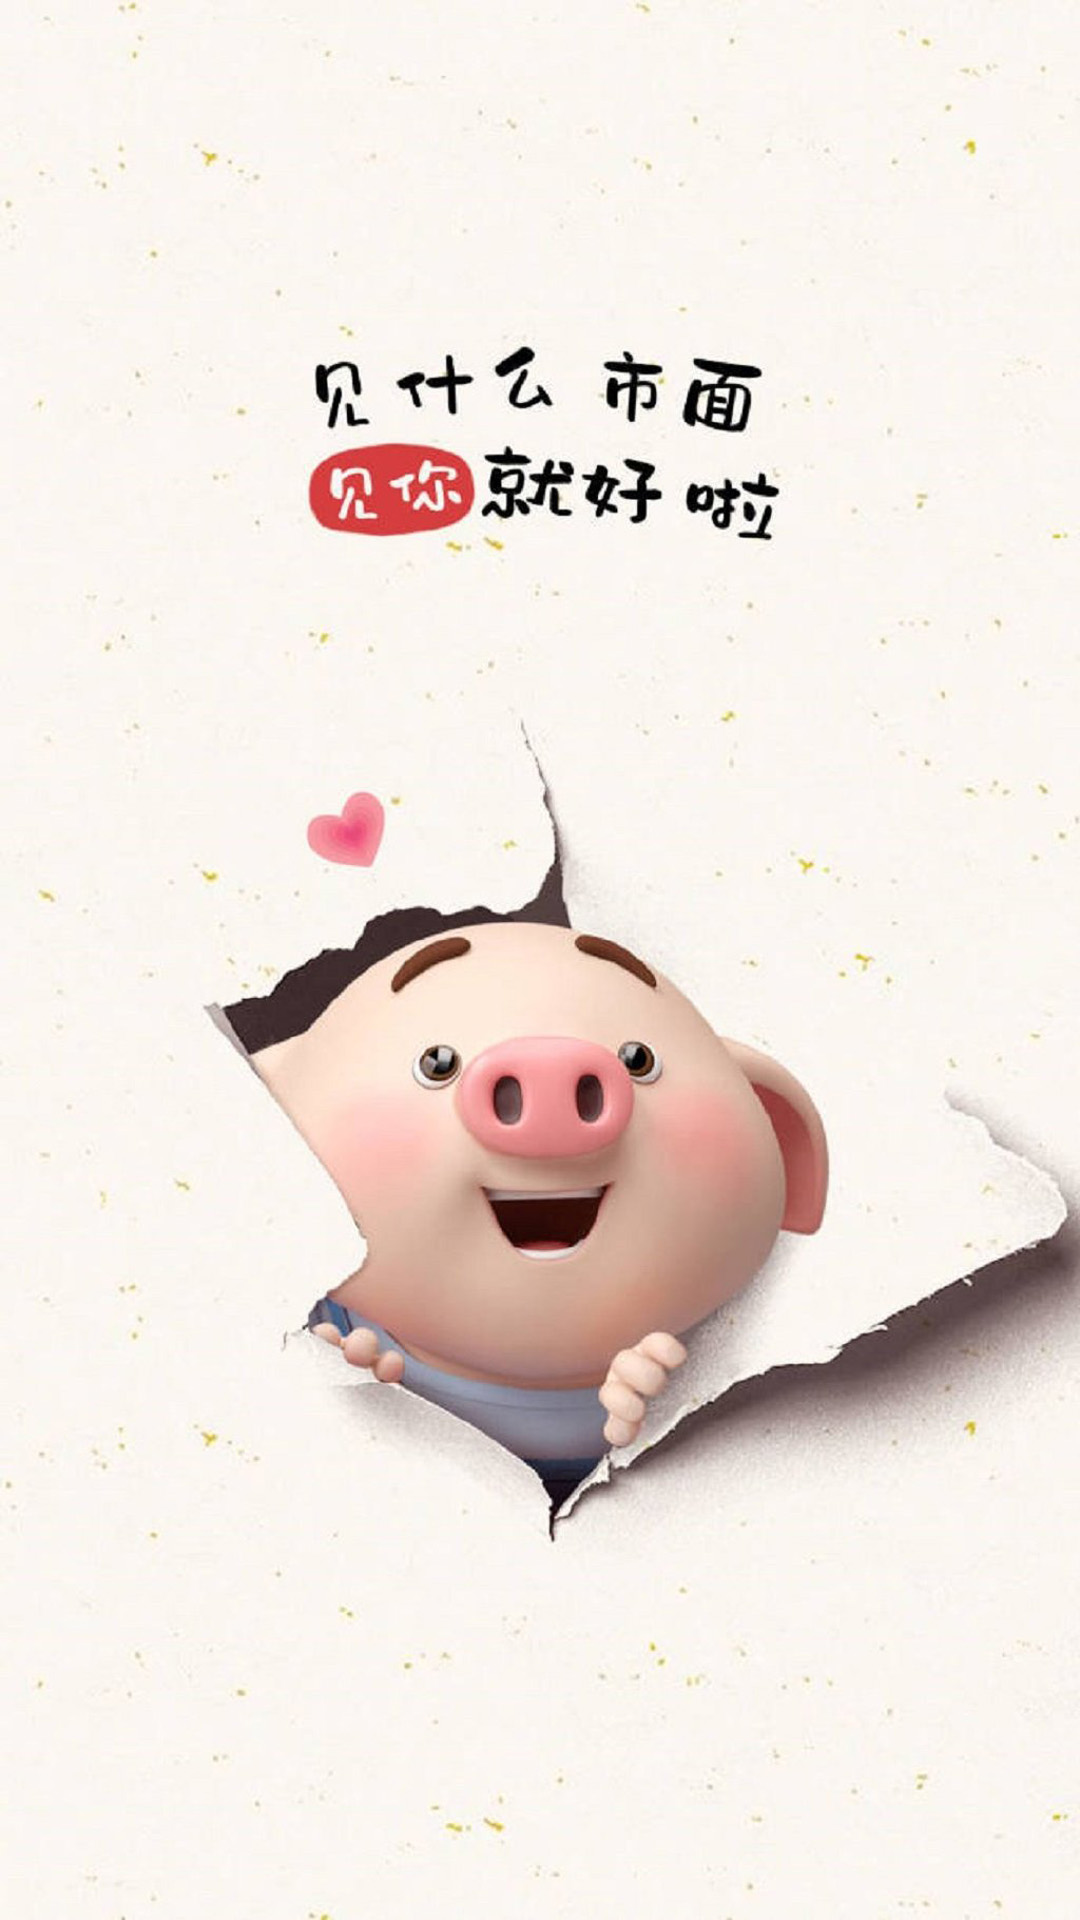 apk小游戏2019猪年可爱卡通小猪图片手机壁纸安卓手机壁纸高清截图6